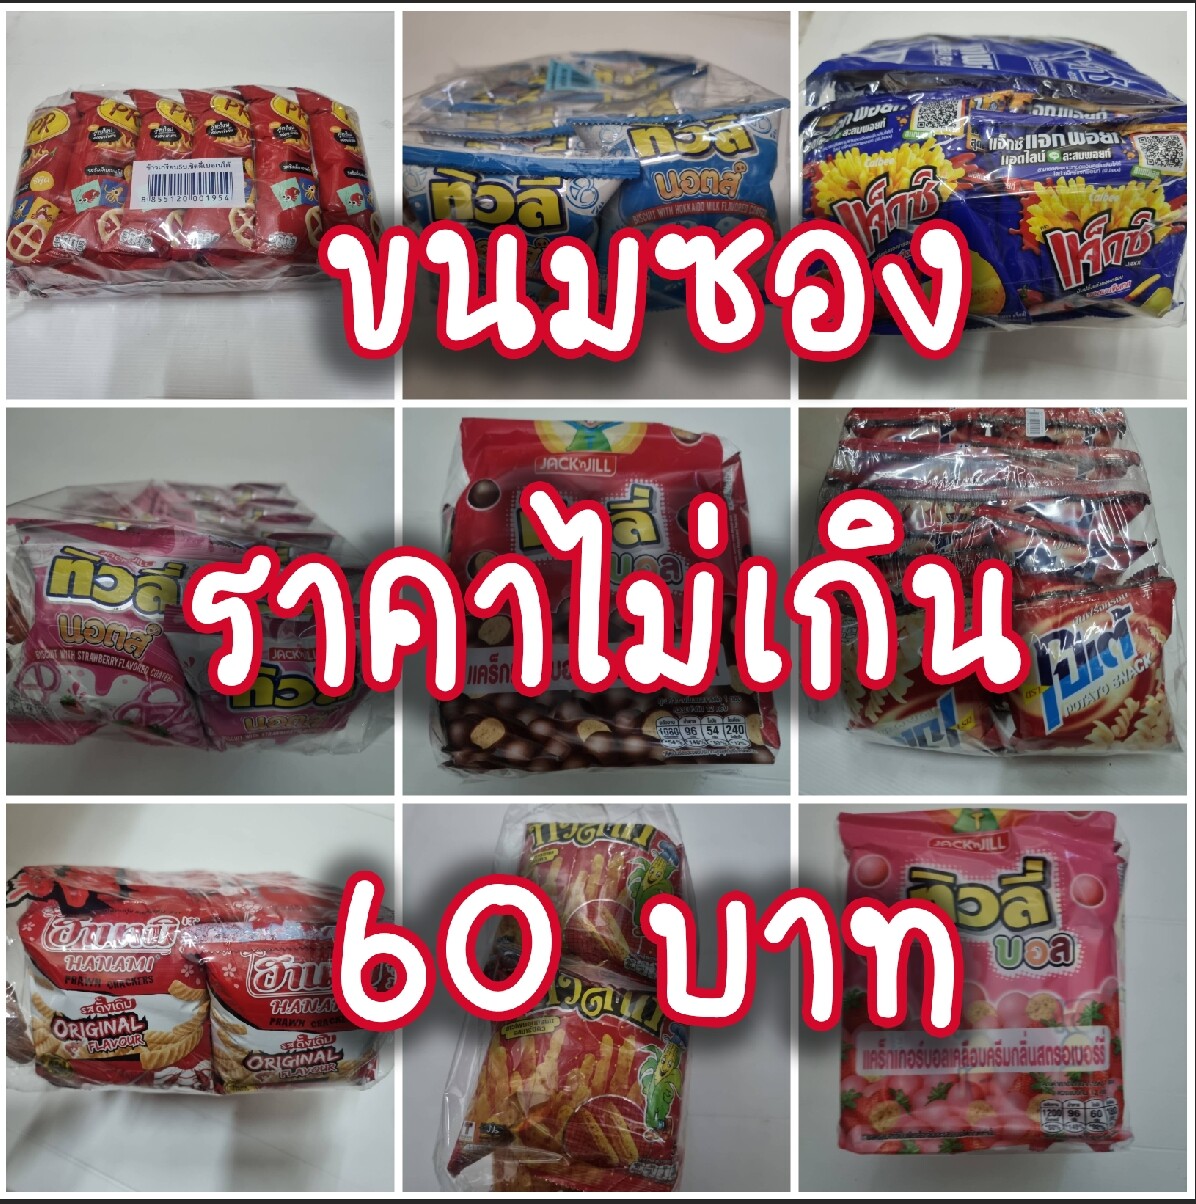 รวมขนมเด็กราคาไม่เกิน 60 บาท ขนมซอง ขนมคบเคี้ยว ขนมโบราณ ข้าวโพดแท่ง  Popular Thai Snack | Lazada.Co.Th